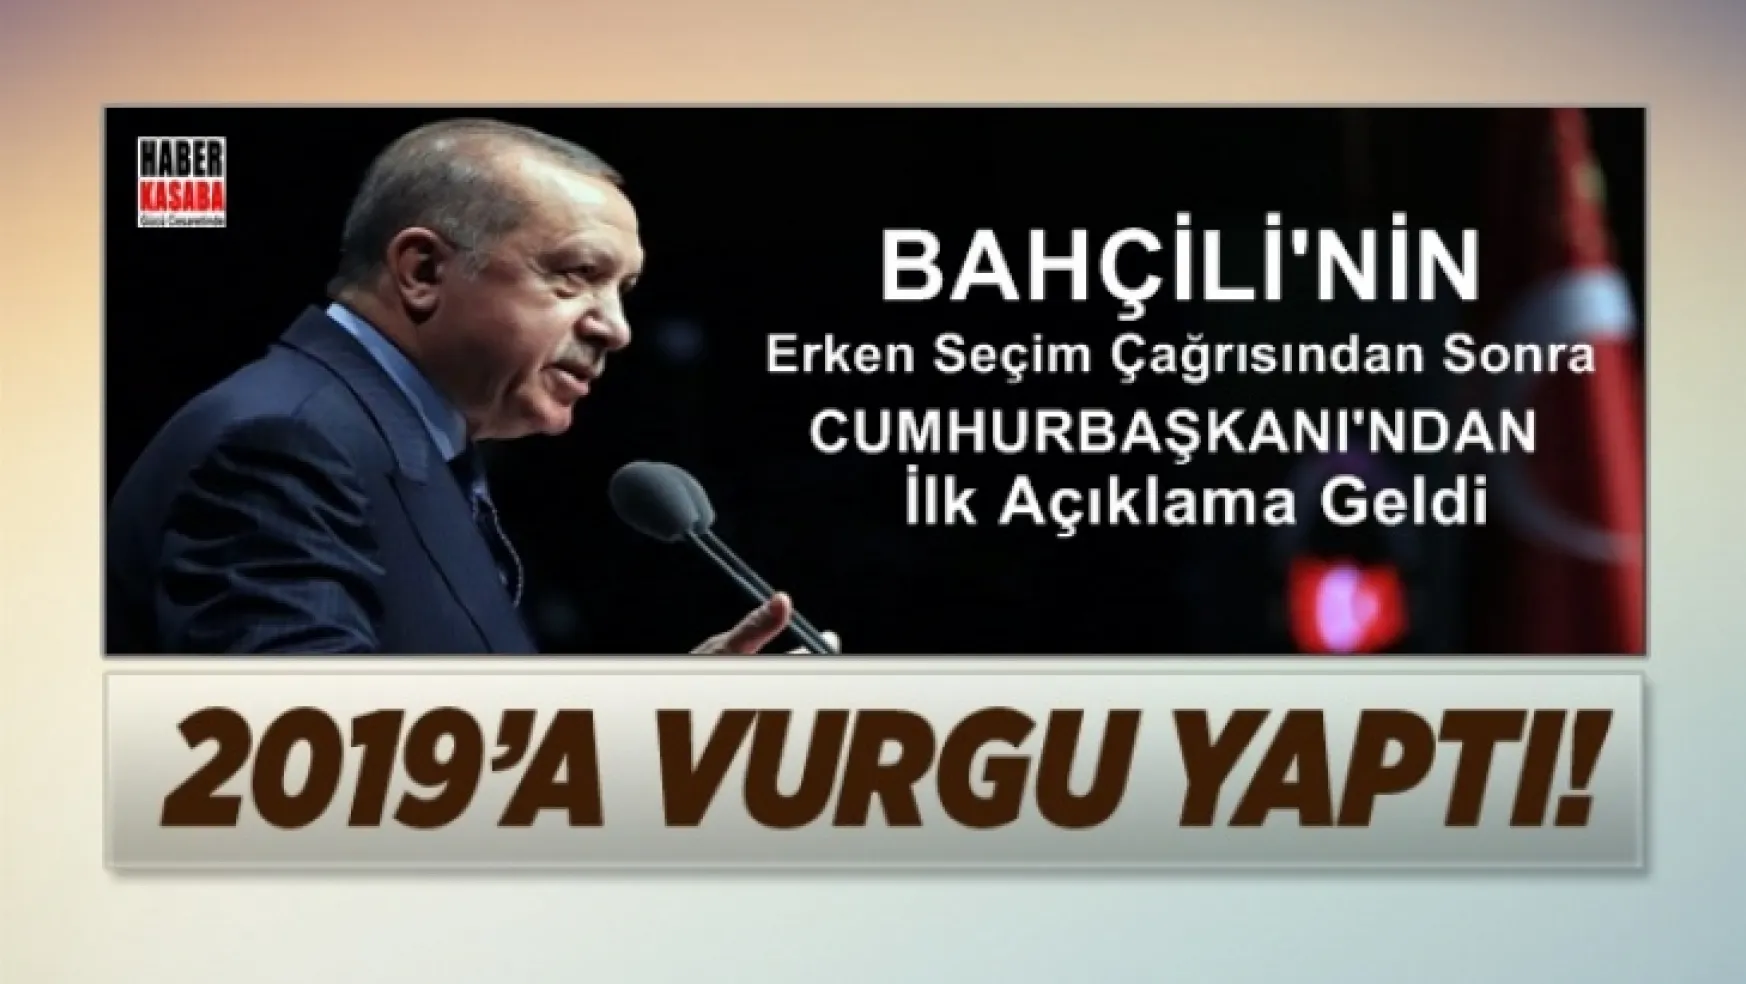 Erdoğan'dan '2019' vurgusu, Bahçeli'nin erken seçim çağrısından sonra geldi